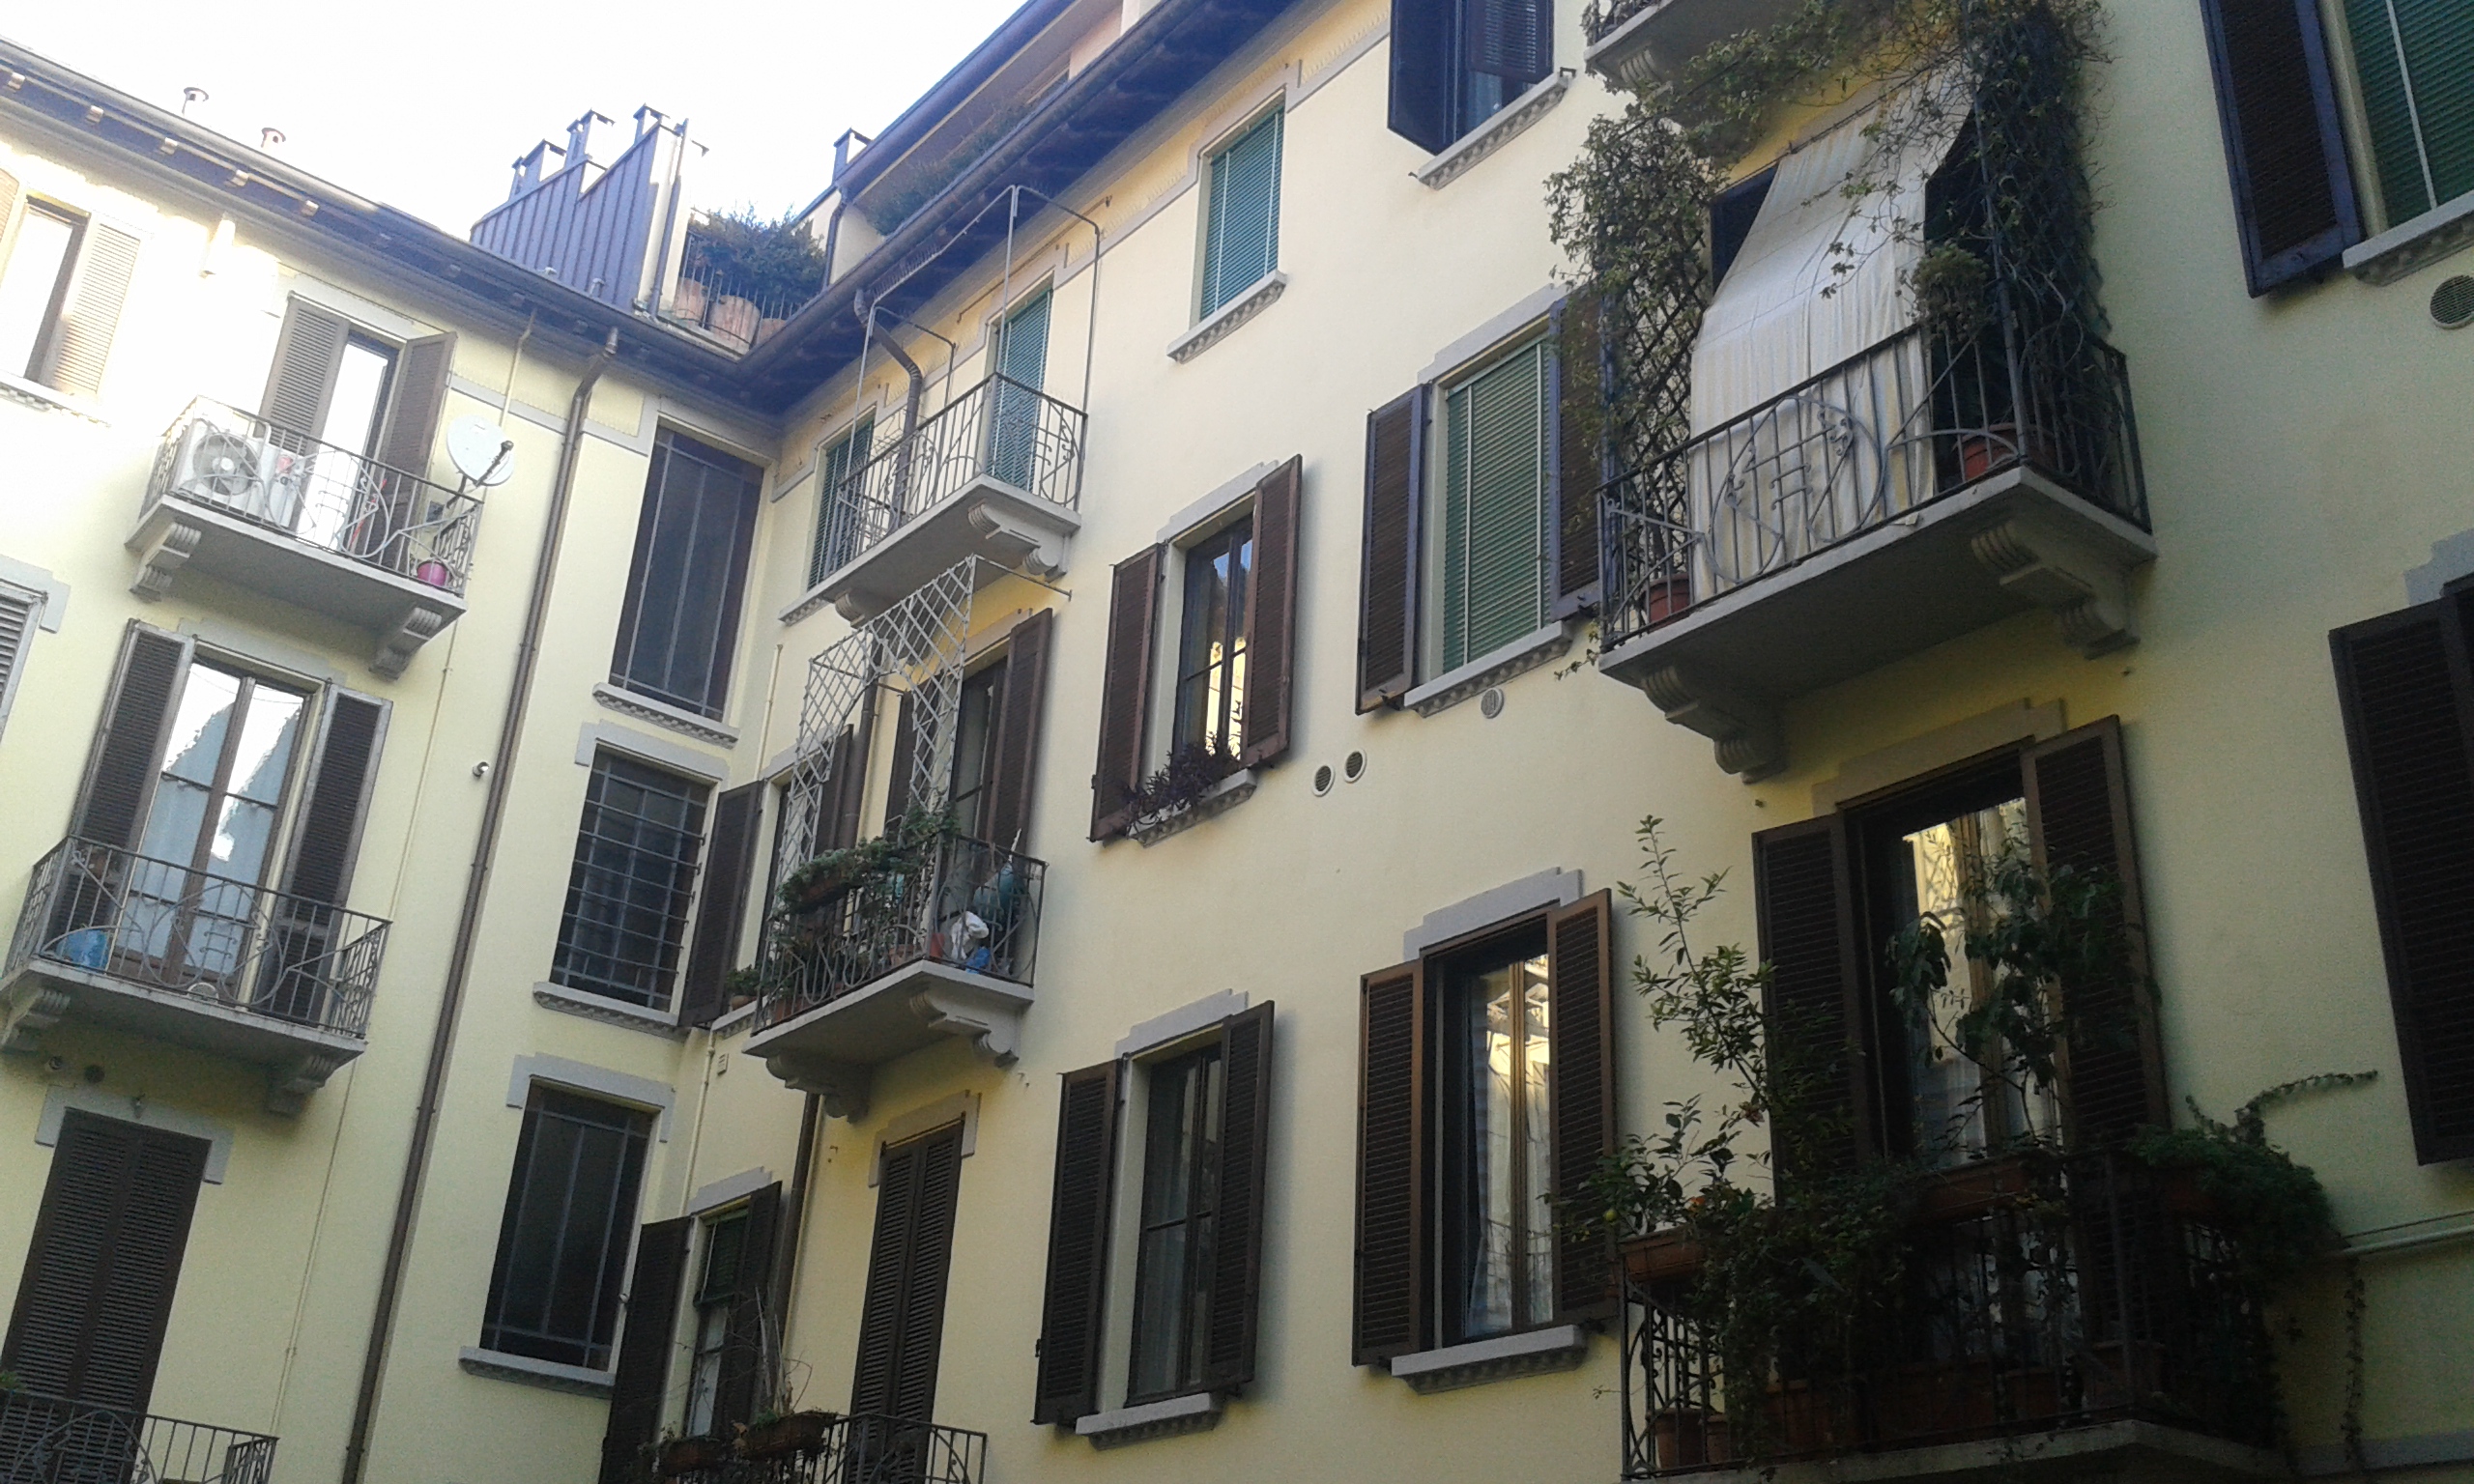 Parapetti per balconi e terrazze